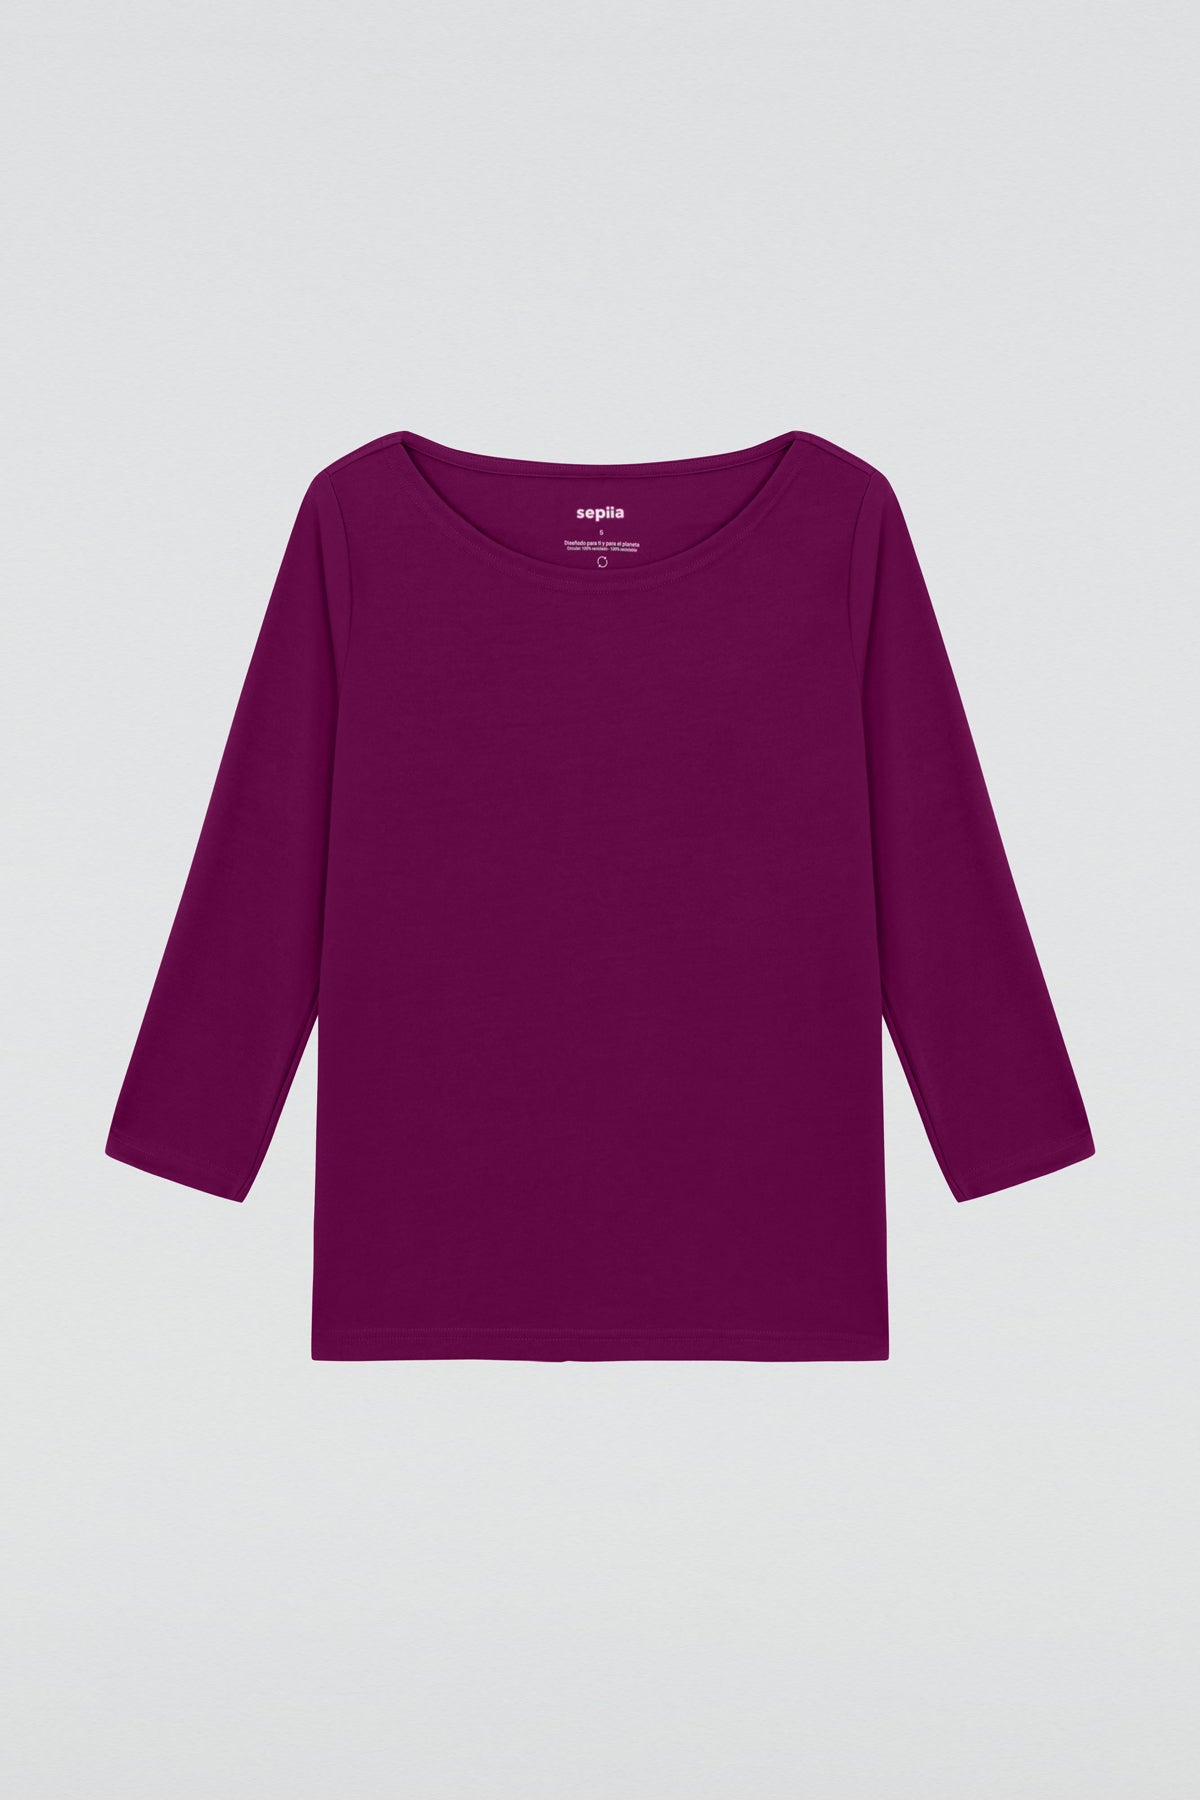 Camiseta barco para mujer galaxia de Sepiia, estilo y comodidad en una prenda versátil. Foto prenda en plano